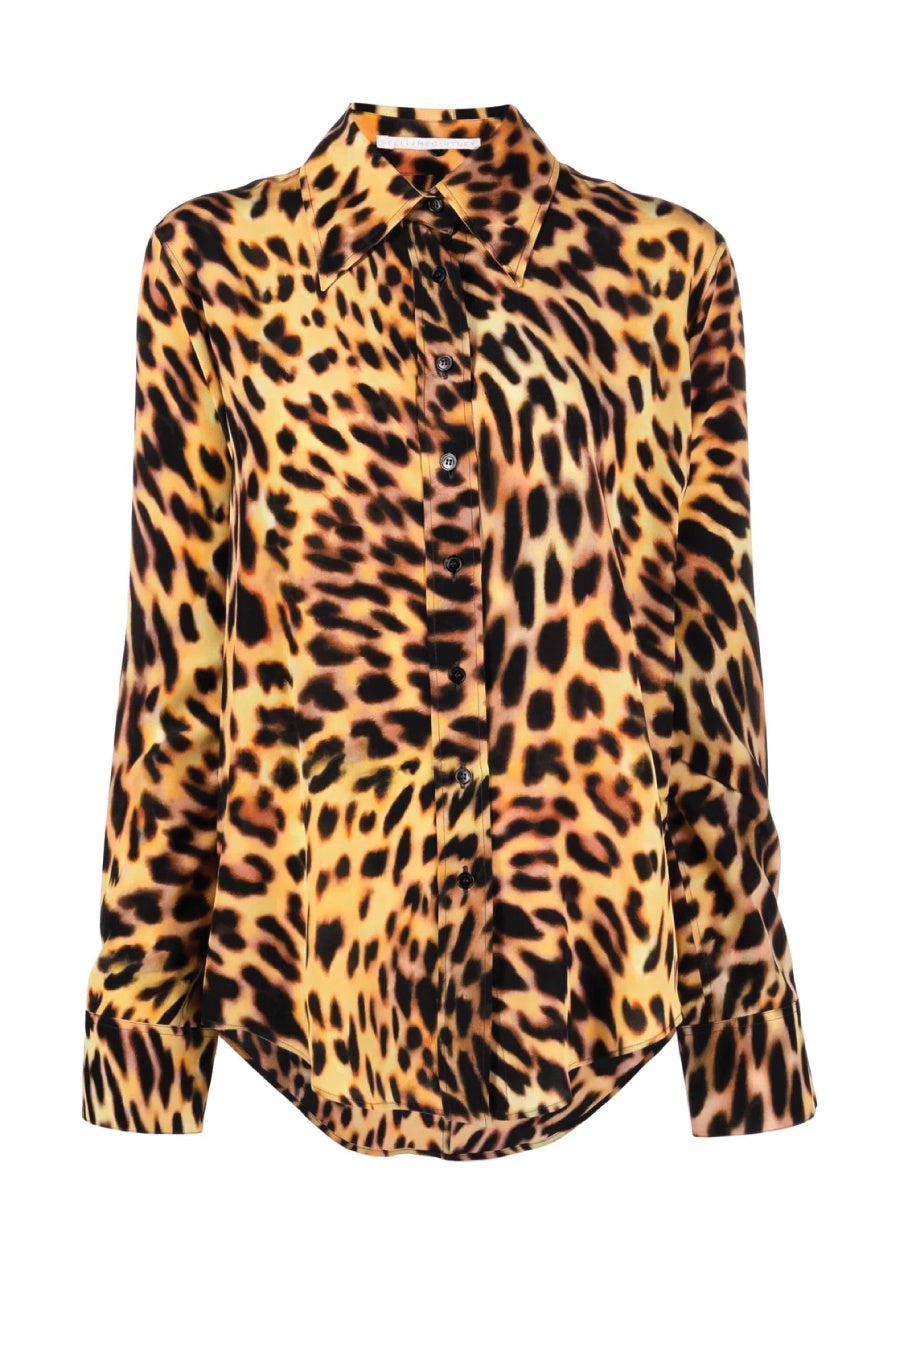 Stella McCartney Cheetah Print Silk Collared Shirt - Tortoiseshell